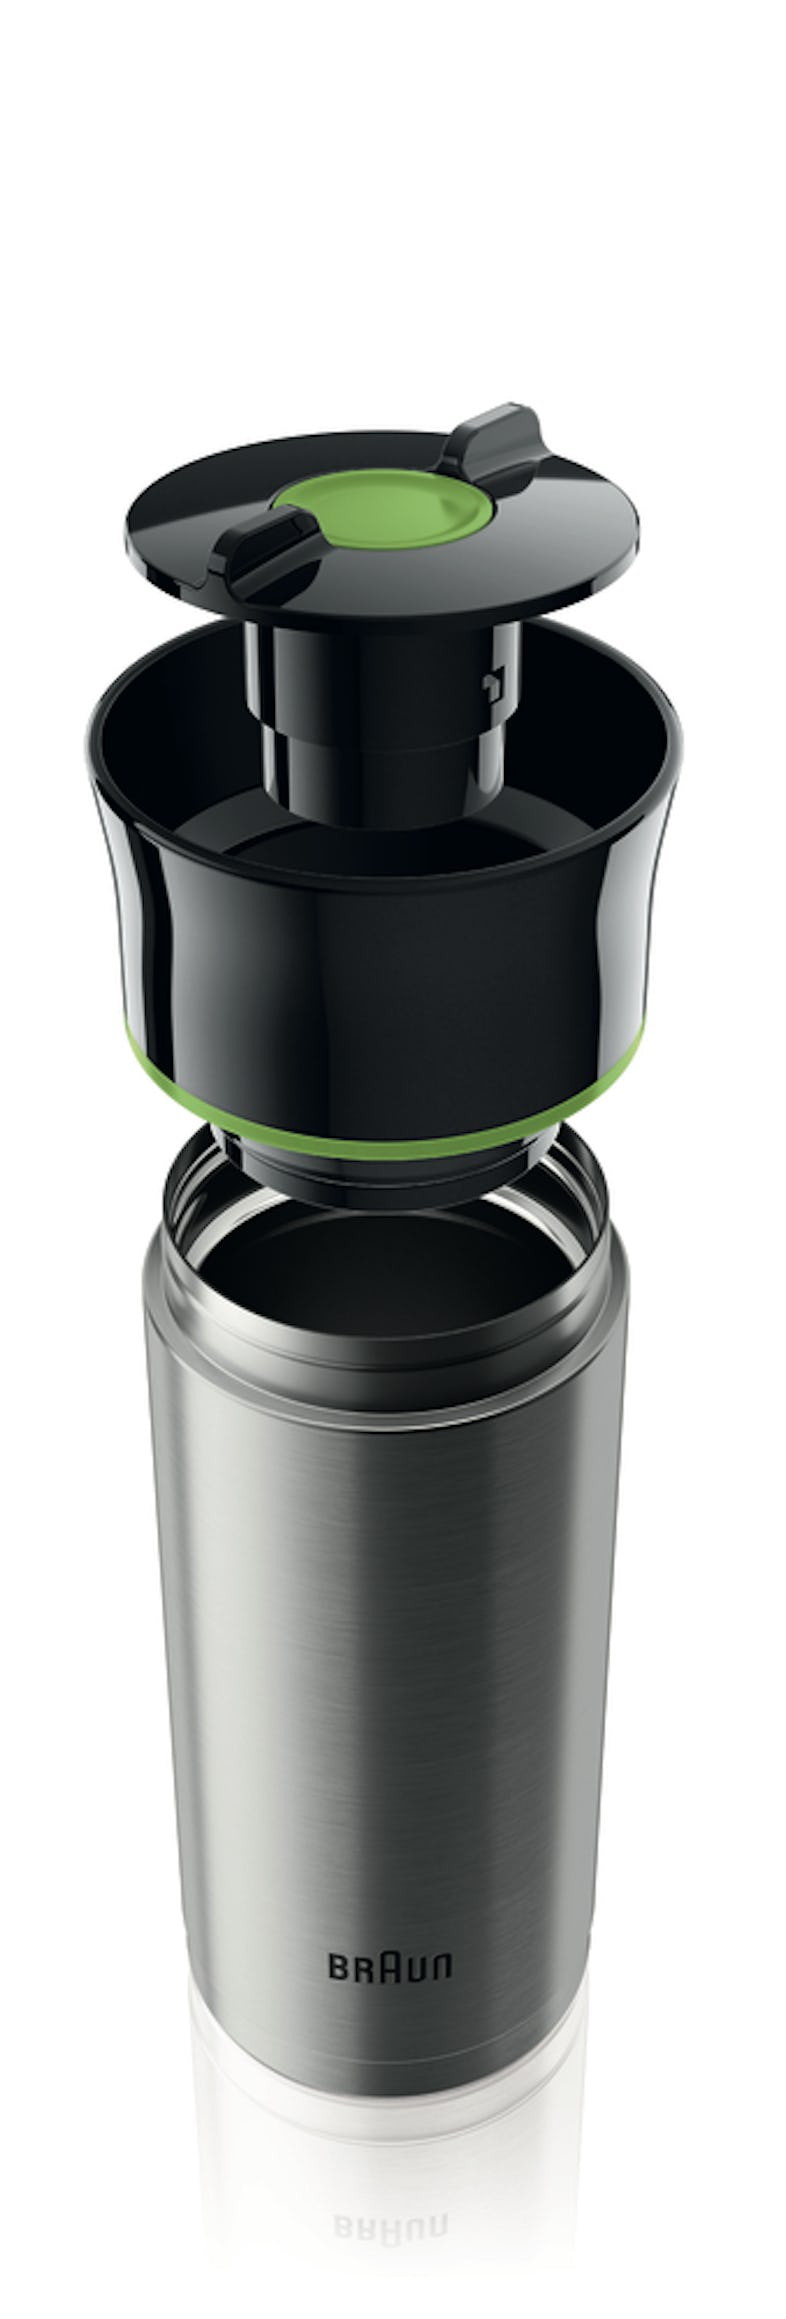 Braun Filterkaffeemaschine KF 7020, 12 Tassen-Aroma-Kanne METRO | Marktplatz